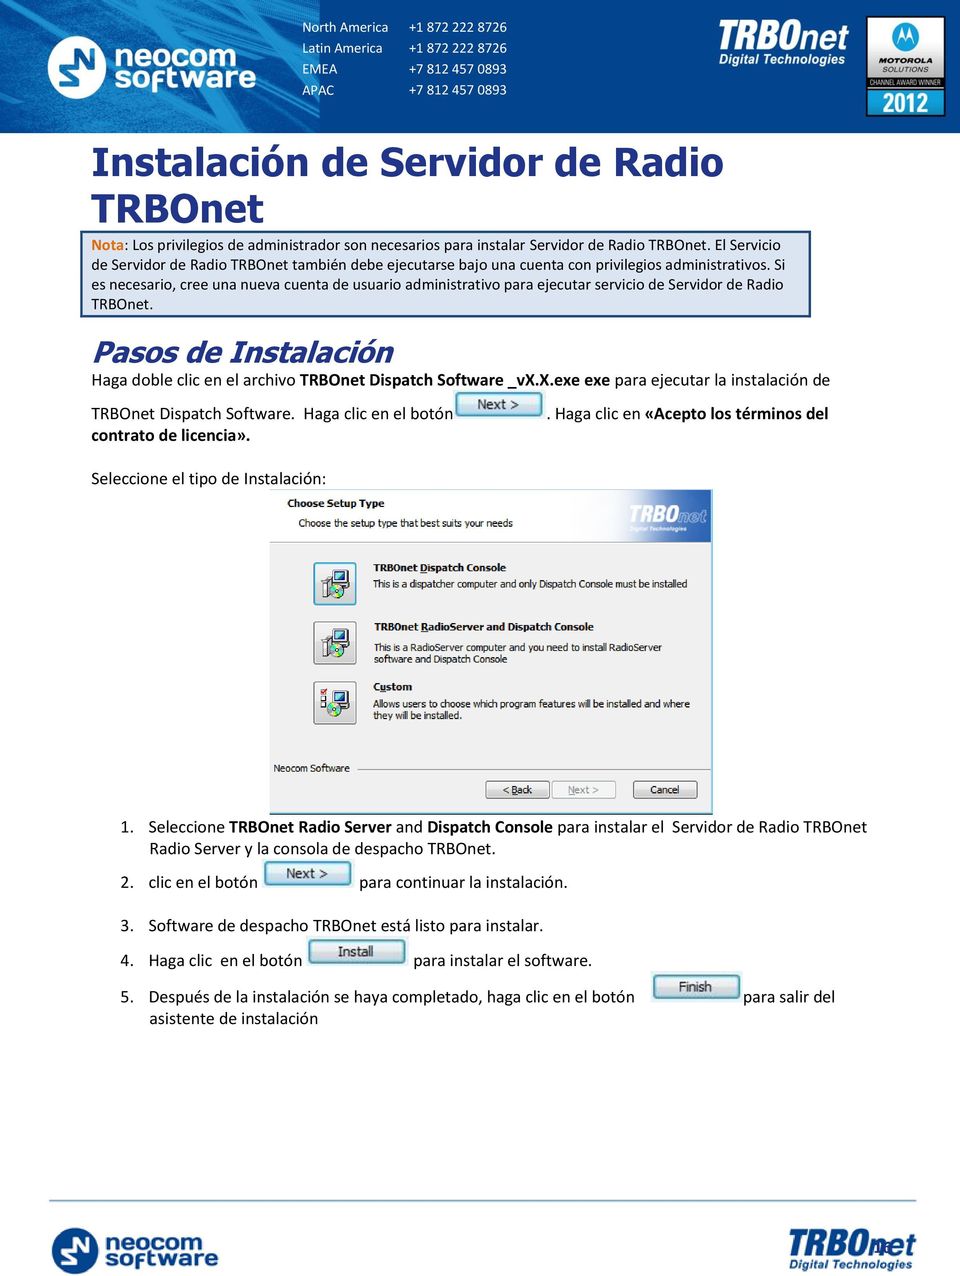 Si es necesario, cree una nueva cuenta de usuario administrativo para ejecutar servicio de Servidor de Radio TRBOnet. Pasos de Instalación Haga doble clic en el archivo TRBOnet Dispatch Software _vx.